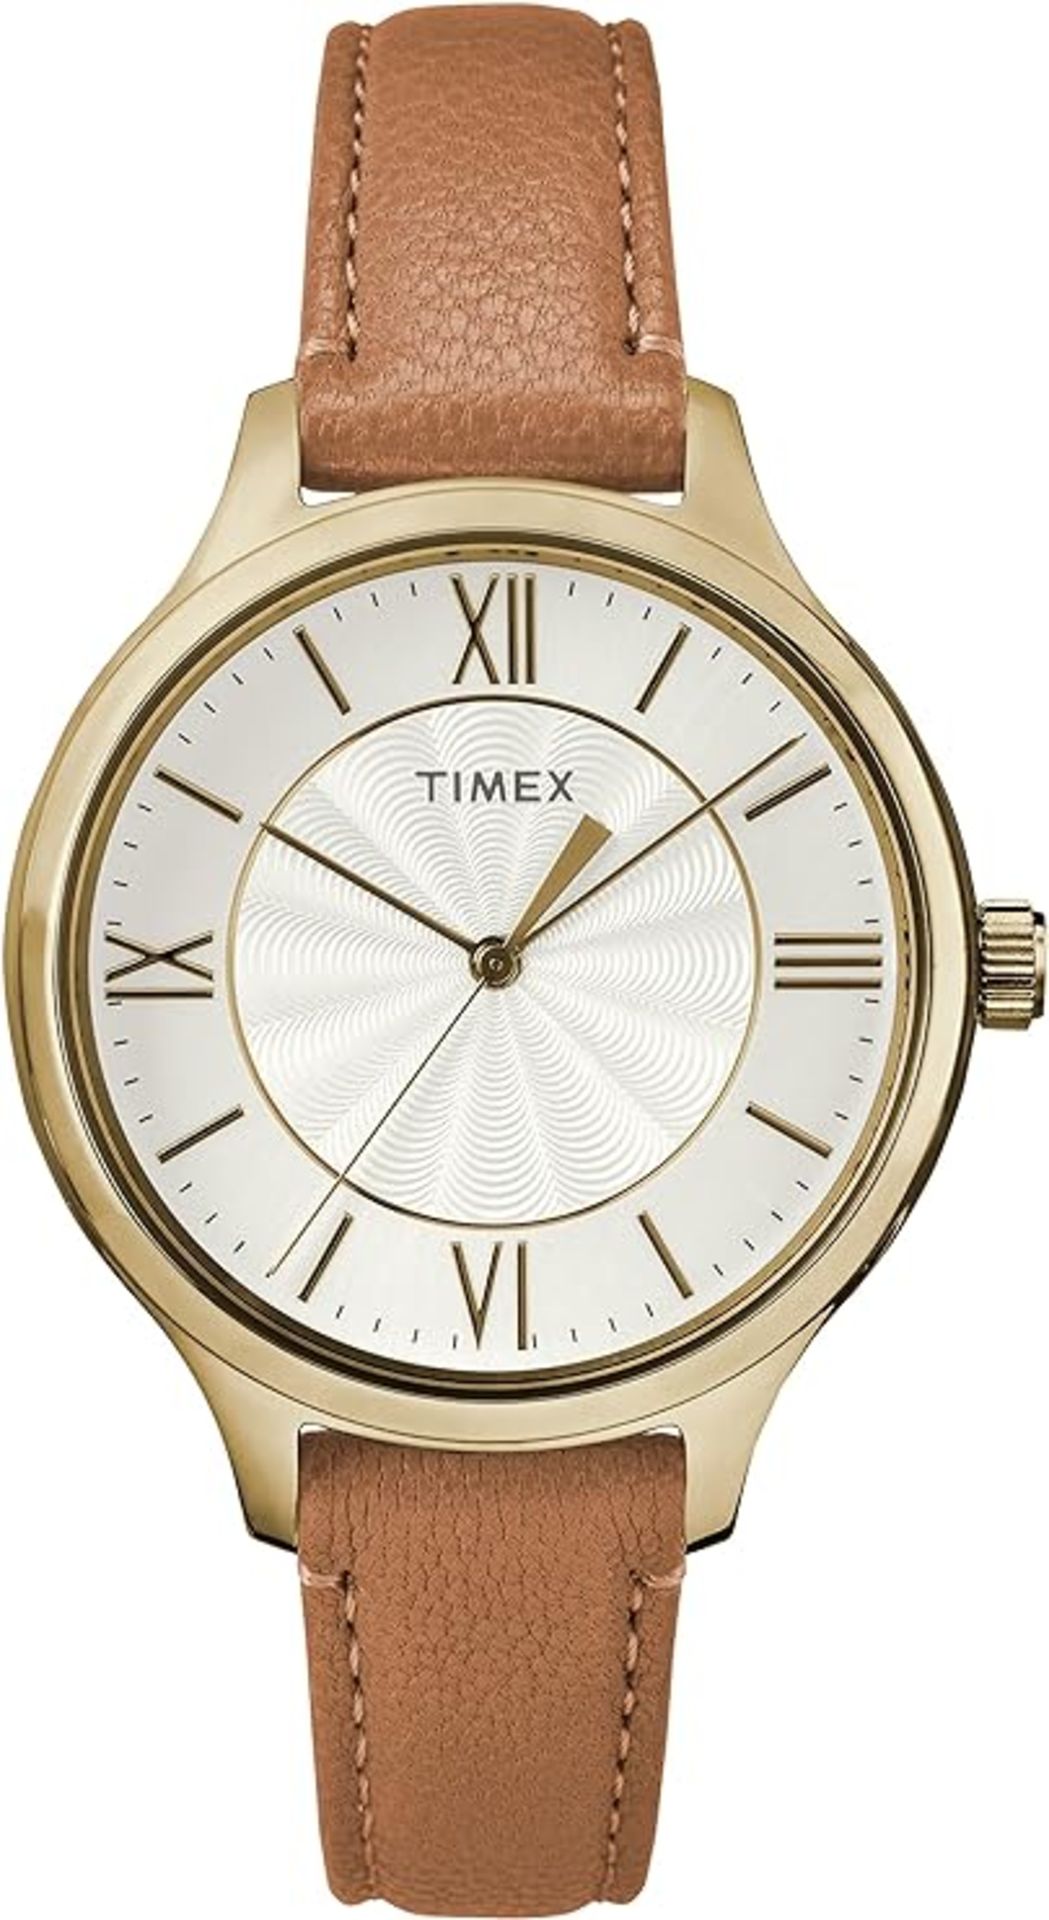 Timex Peyton Women Watch - Image 4 of 4